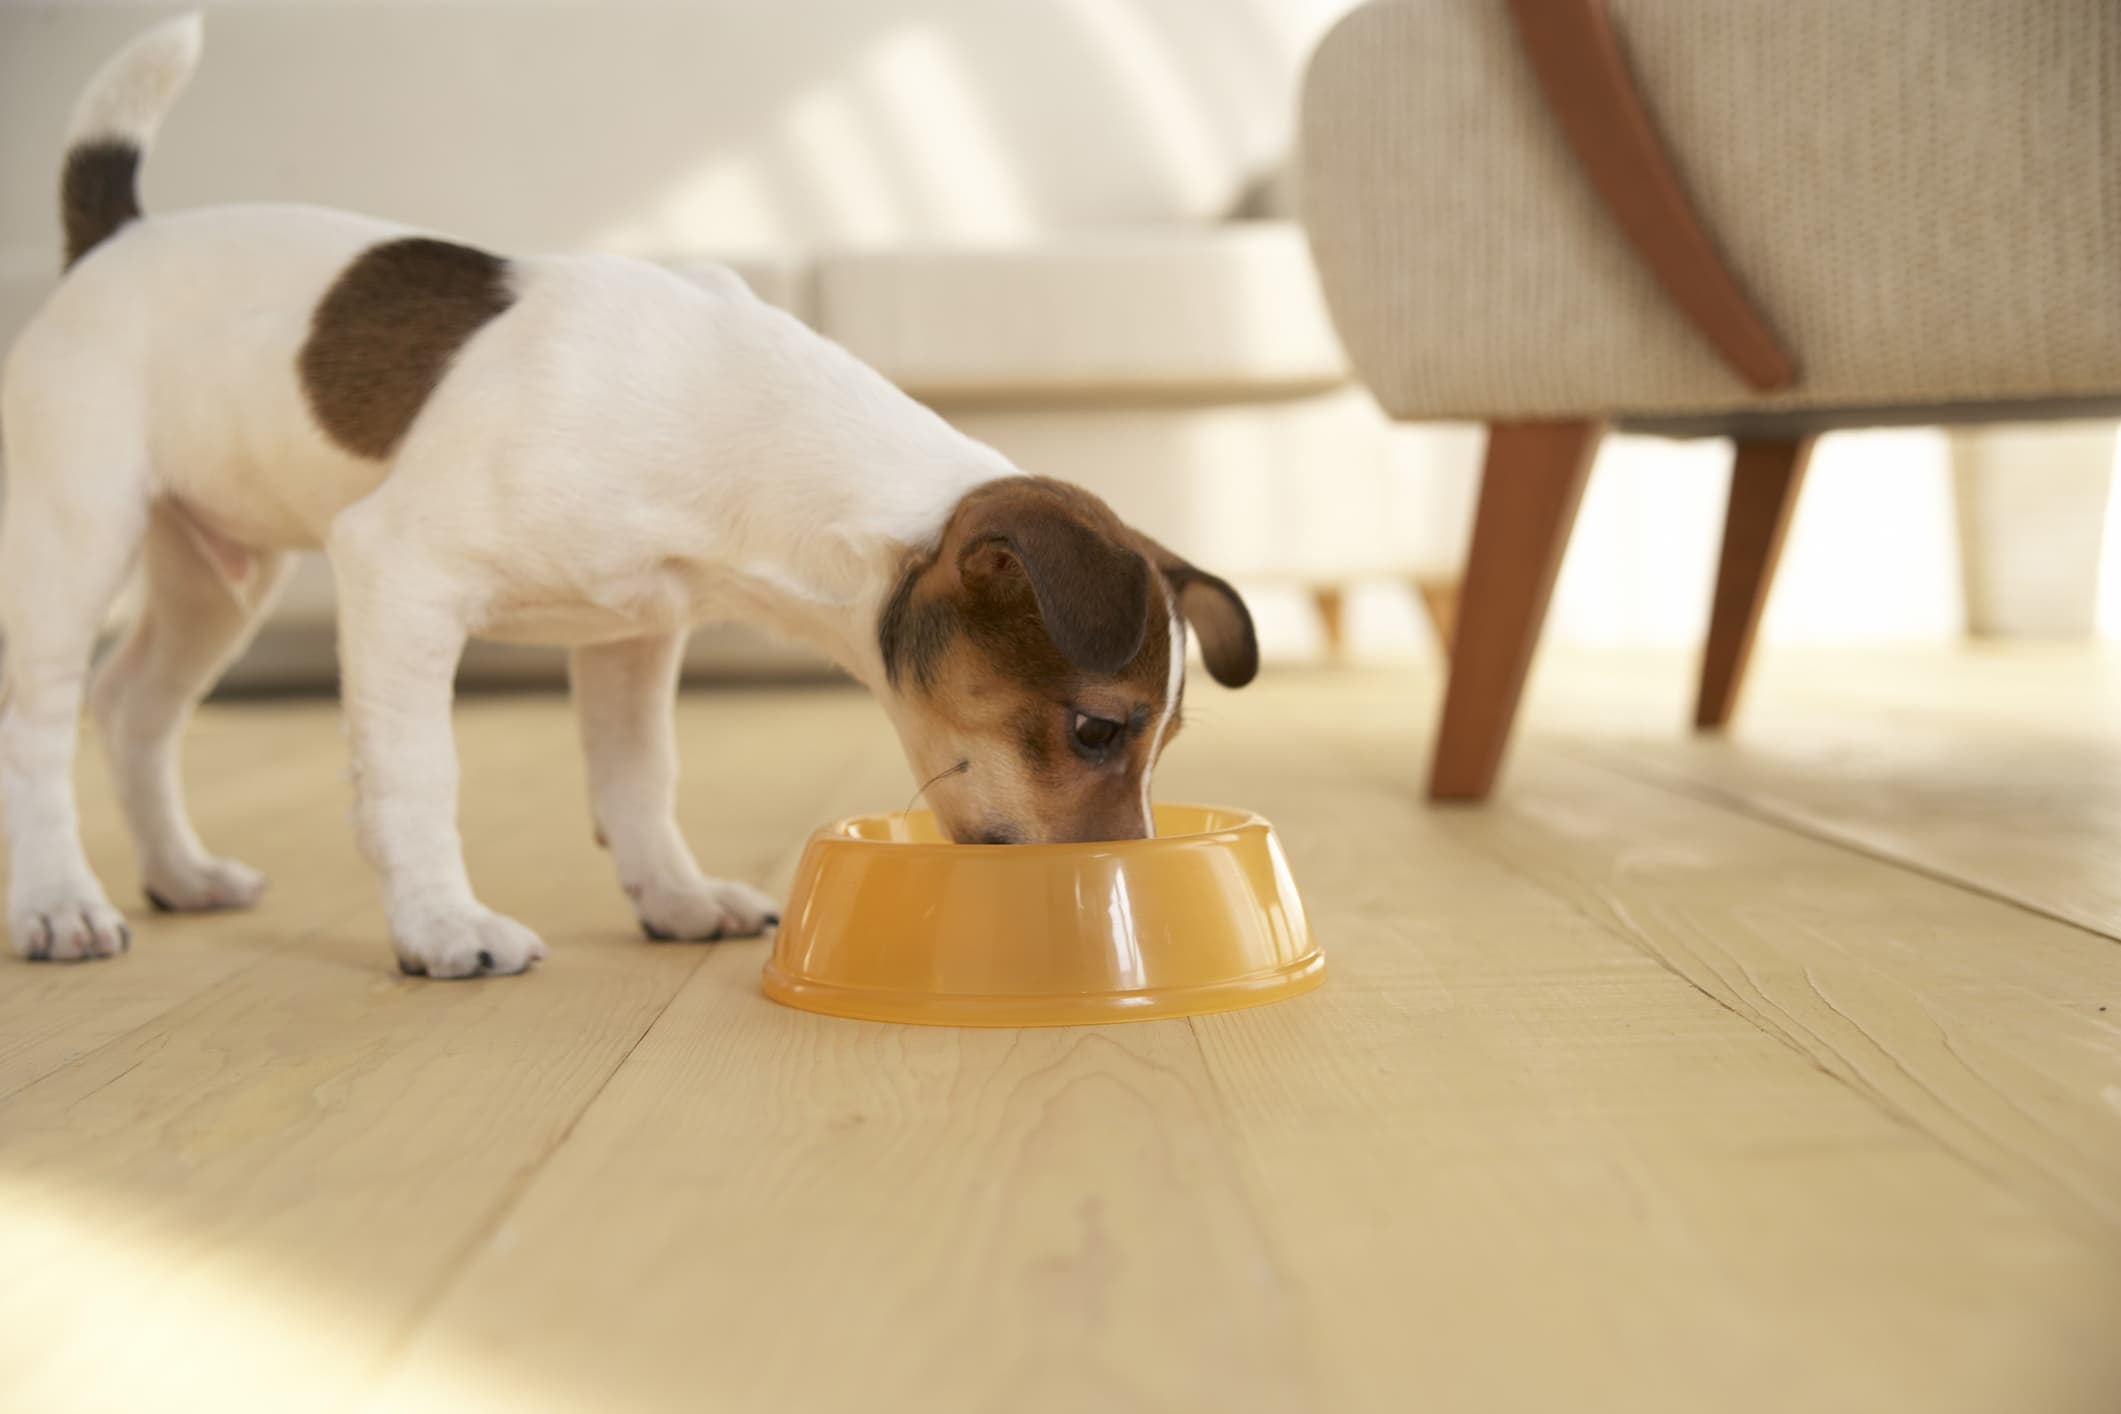 um cachorro de pelo branco e manchas marrom se alimentando em uma vasilha de cor laranja ao fundo uma poltrona de cor bege